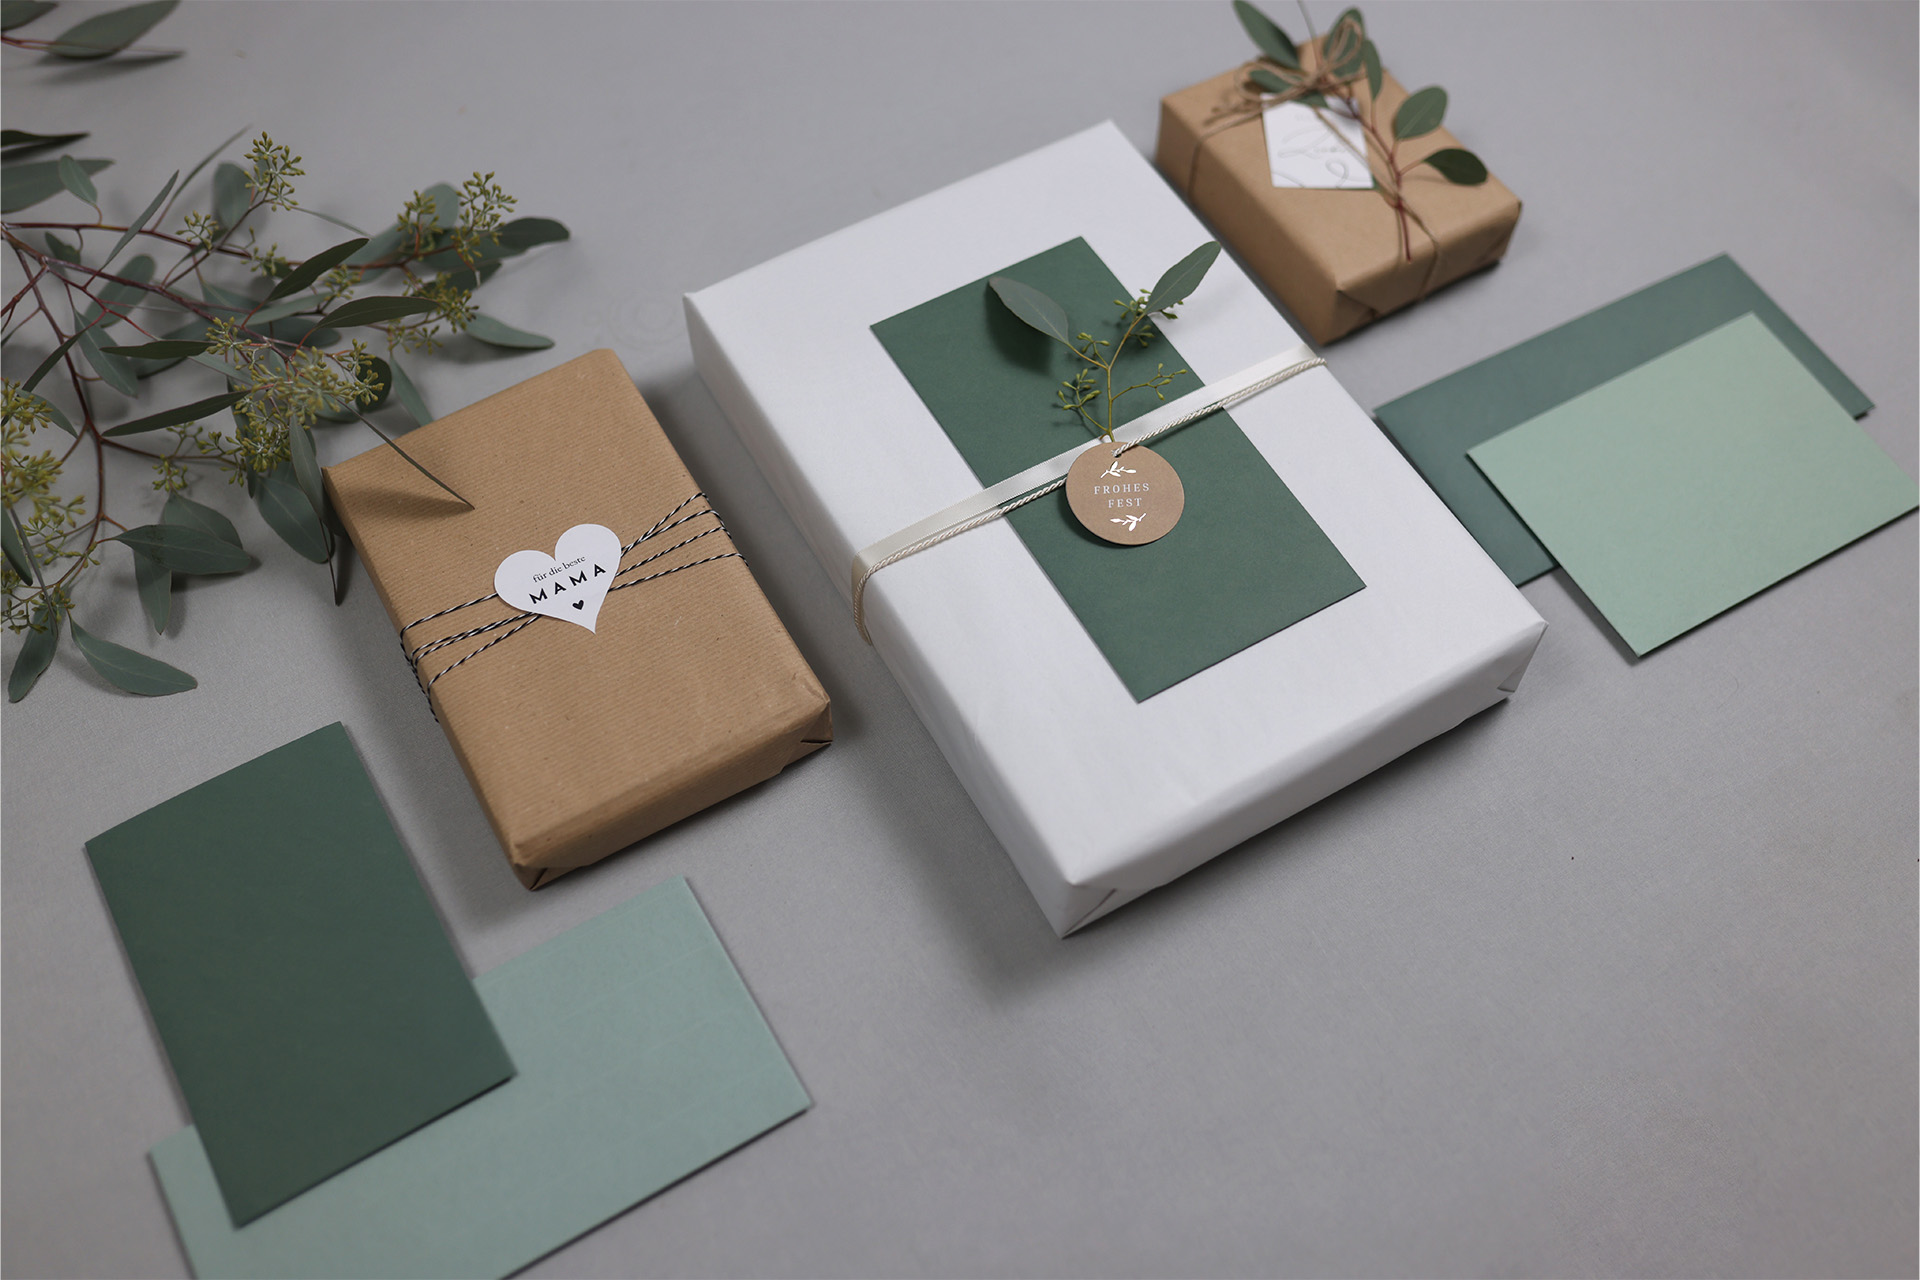 Ideen, um Geschenke schön zu verpacken – Eine Step-by-Step Anleitung